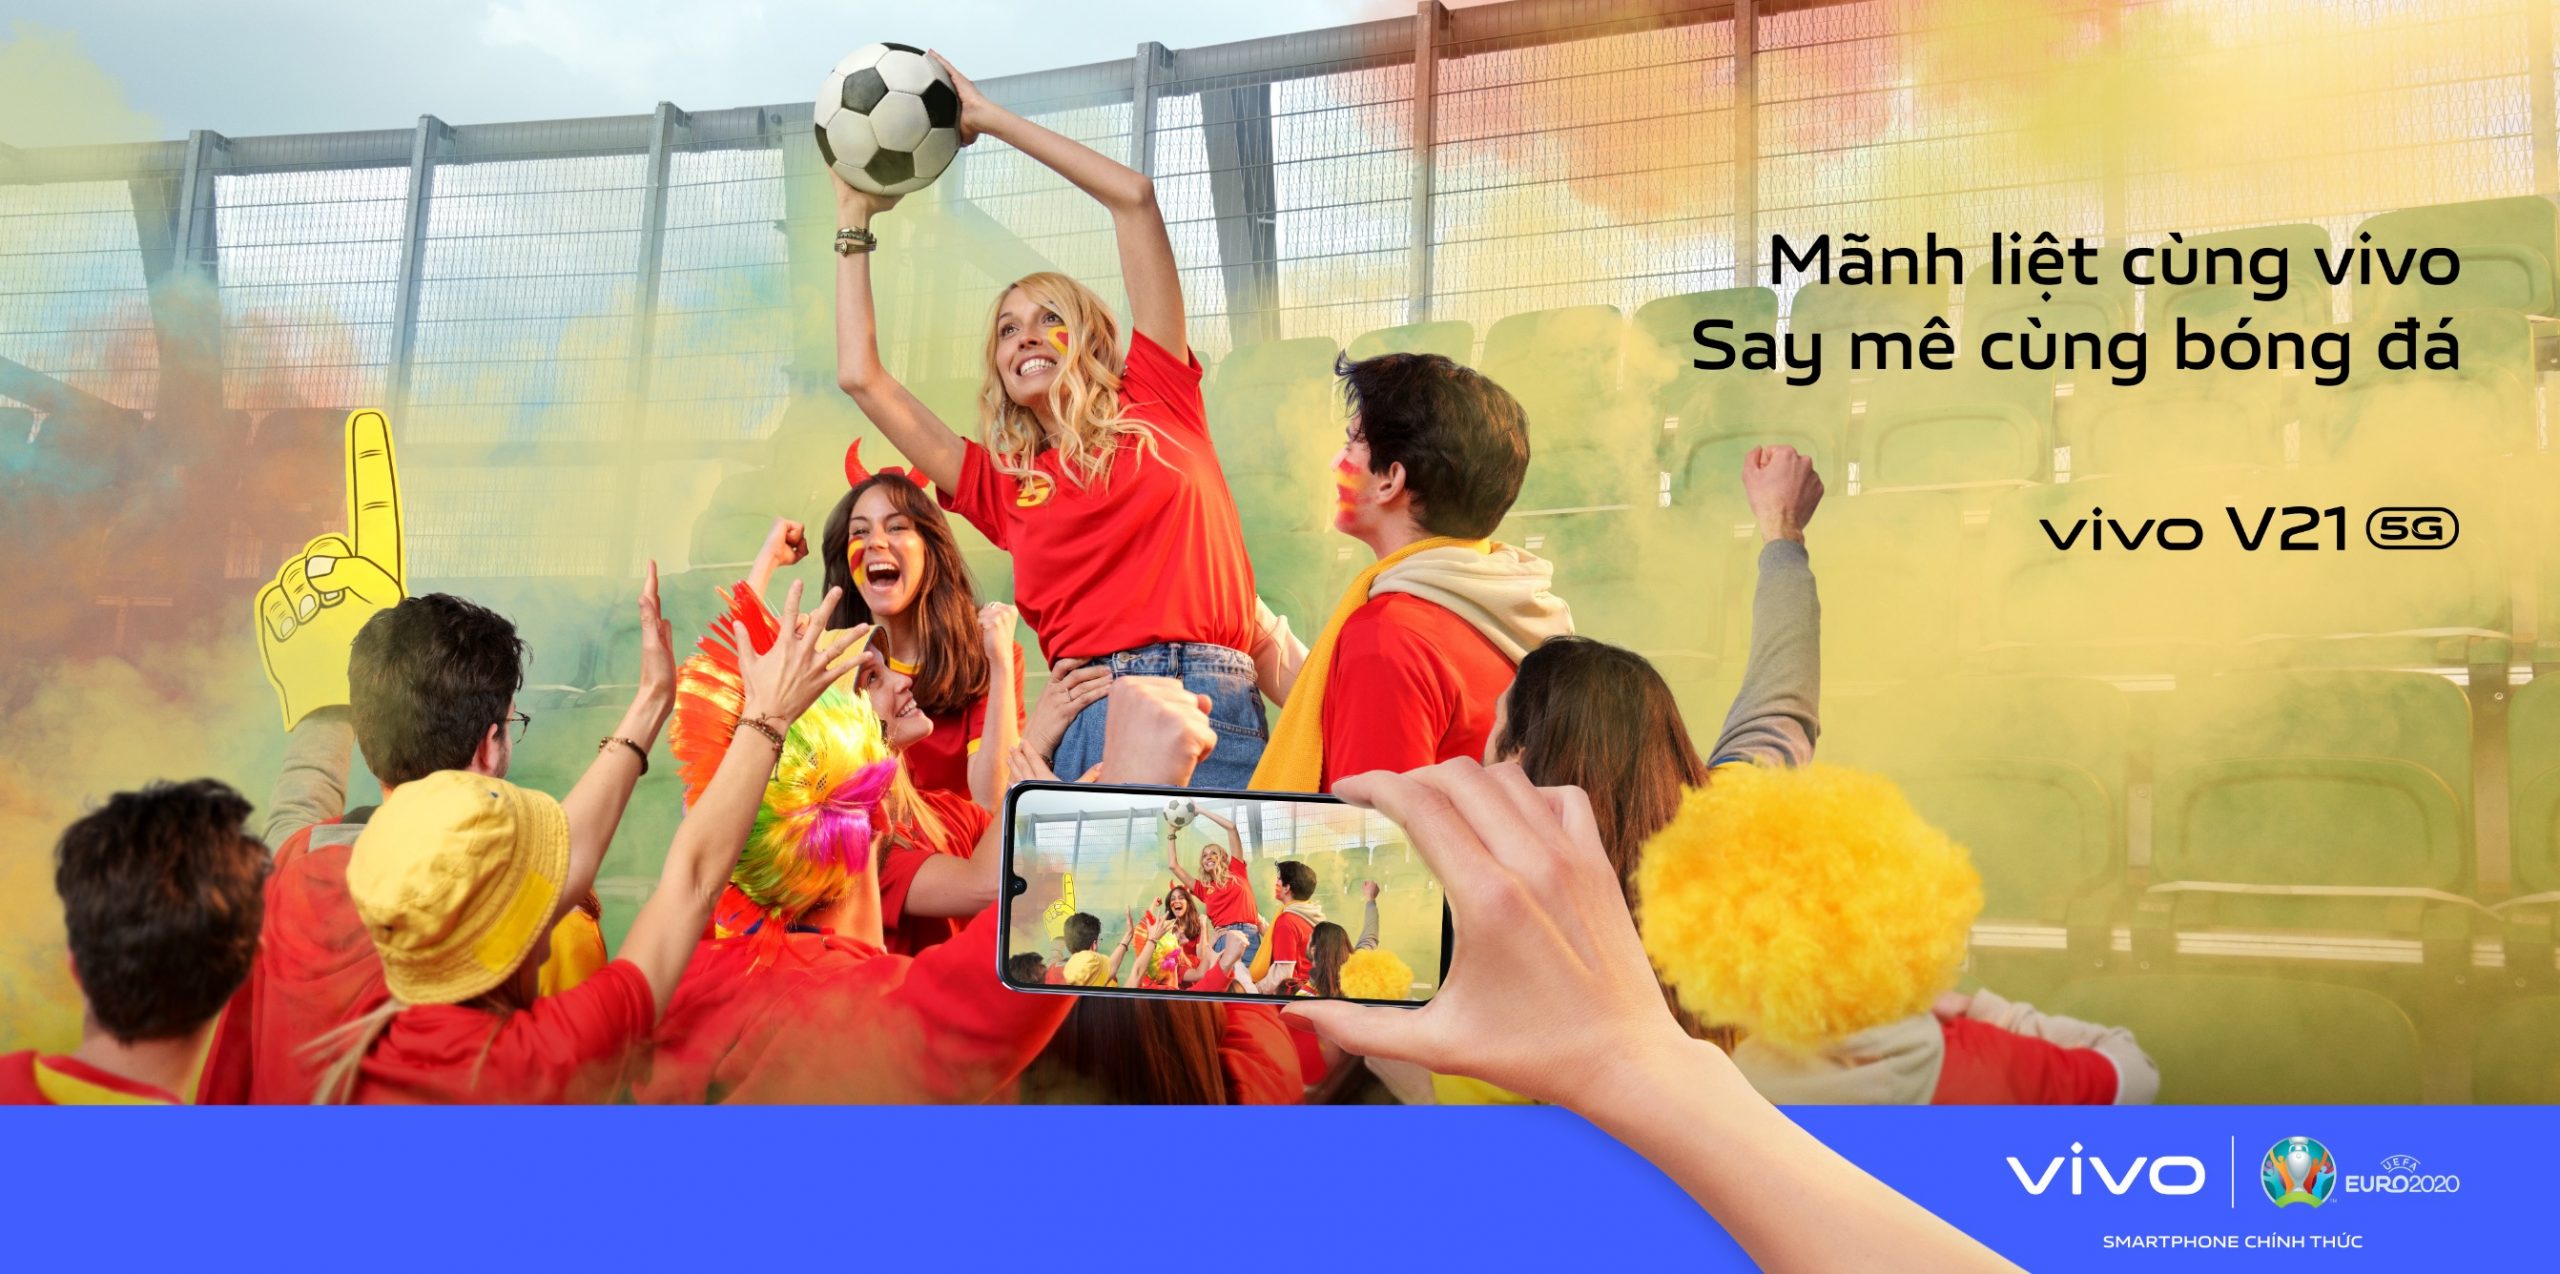 vivo công bố chiến dịch “Mãnh liệt cùng vivo, Say mê cùng bóng đá” – Tự hào là Smartphone Chính Thức của UEFA EURO 2020